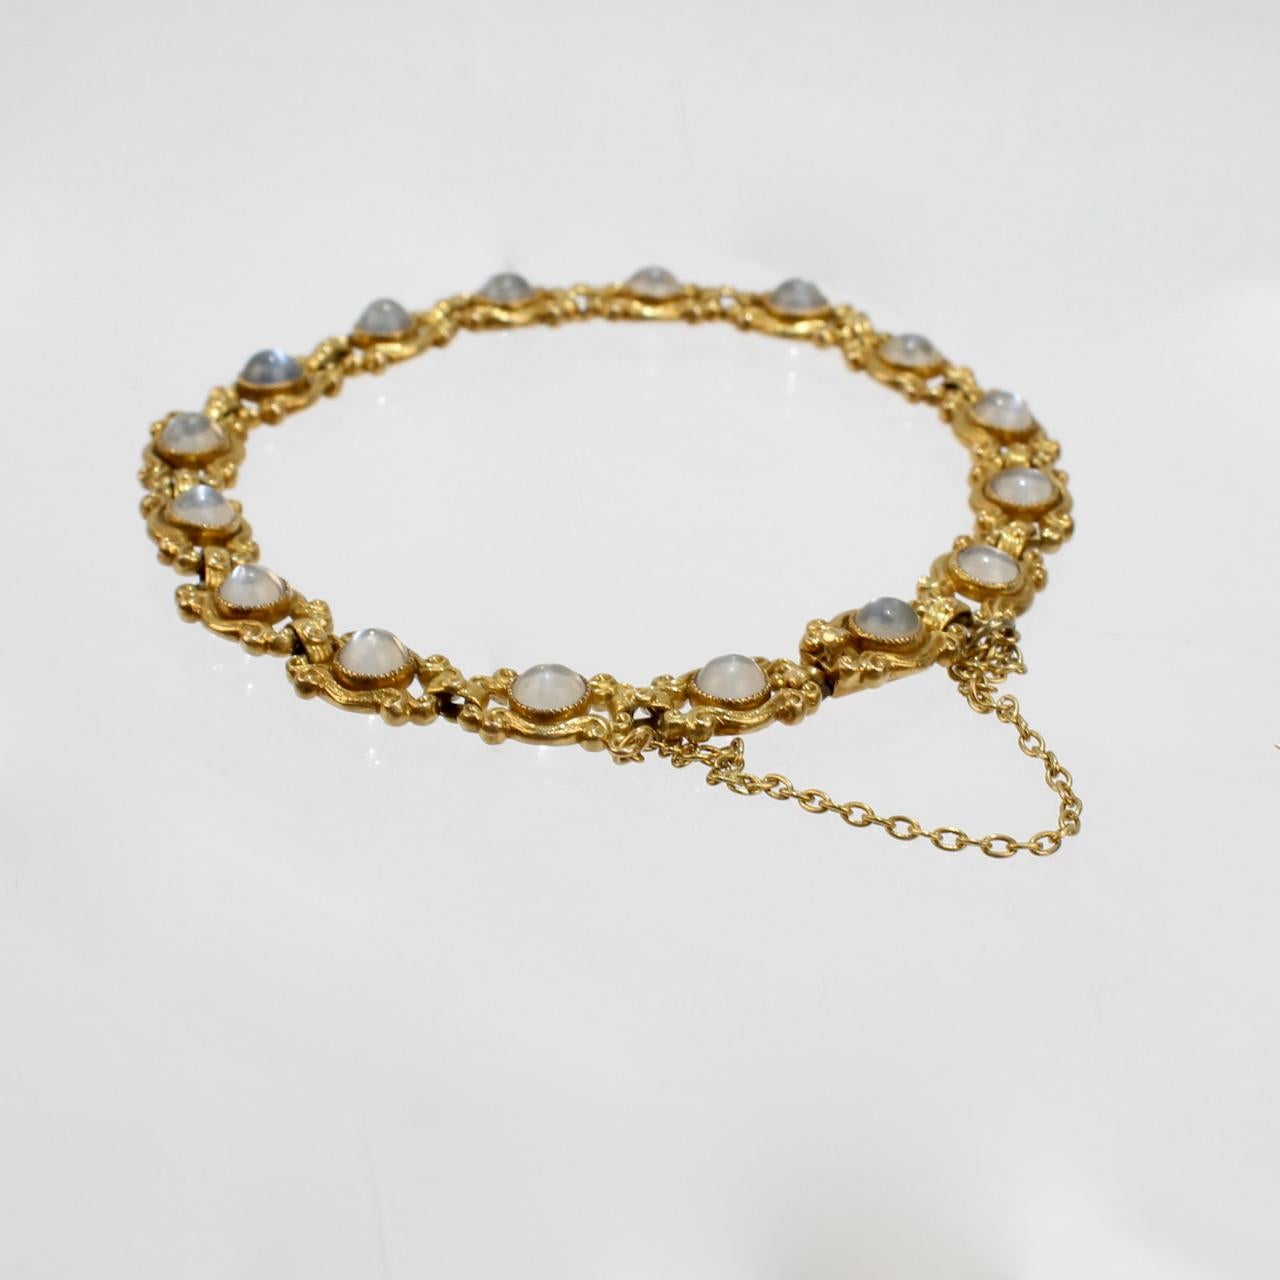 Signed Sloan & Co. Edwardian 14 Karat Gold and Moonstone Link Bracelet 1